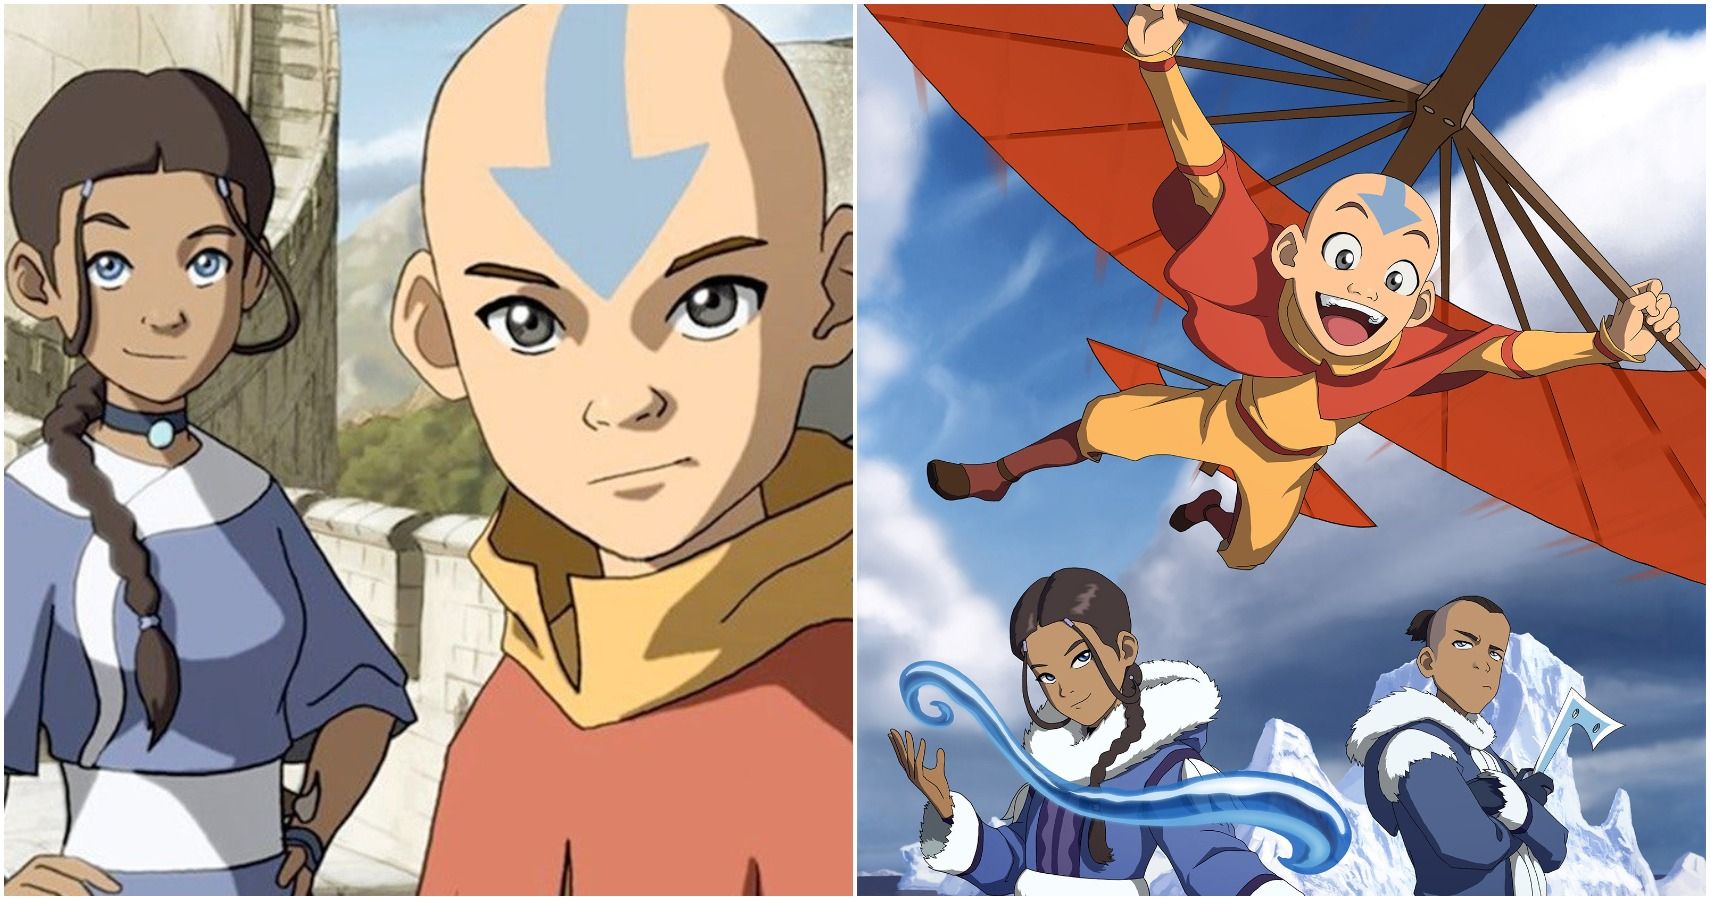 5 Best Avatar Episodes Based on IMDb Ratings  Dafundacom